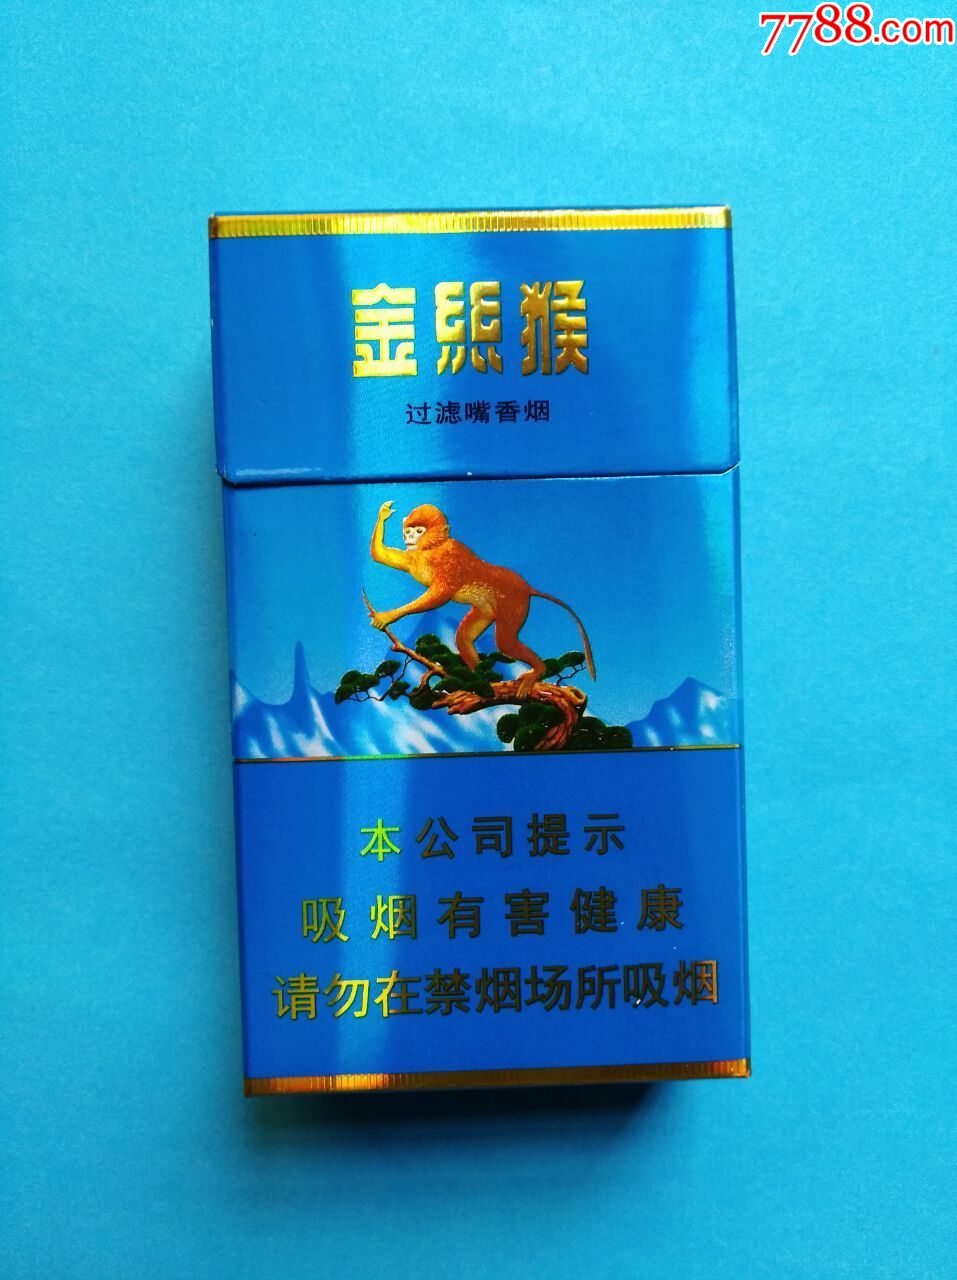 金丝猴软盒香烟图片